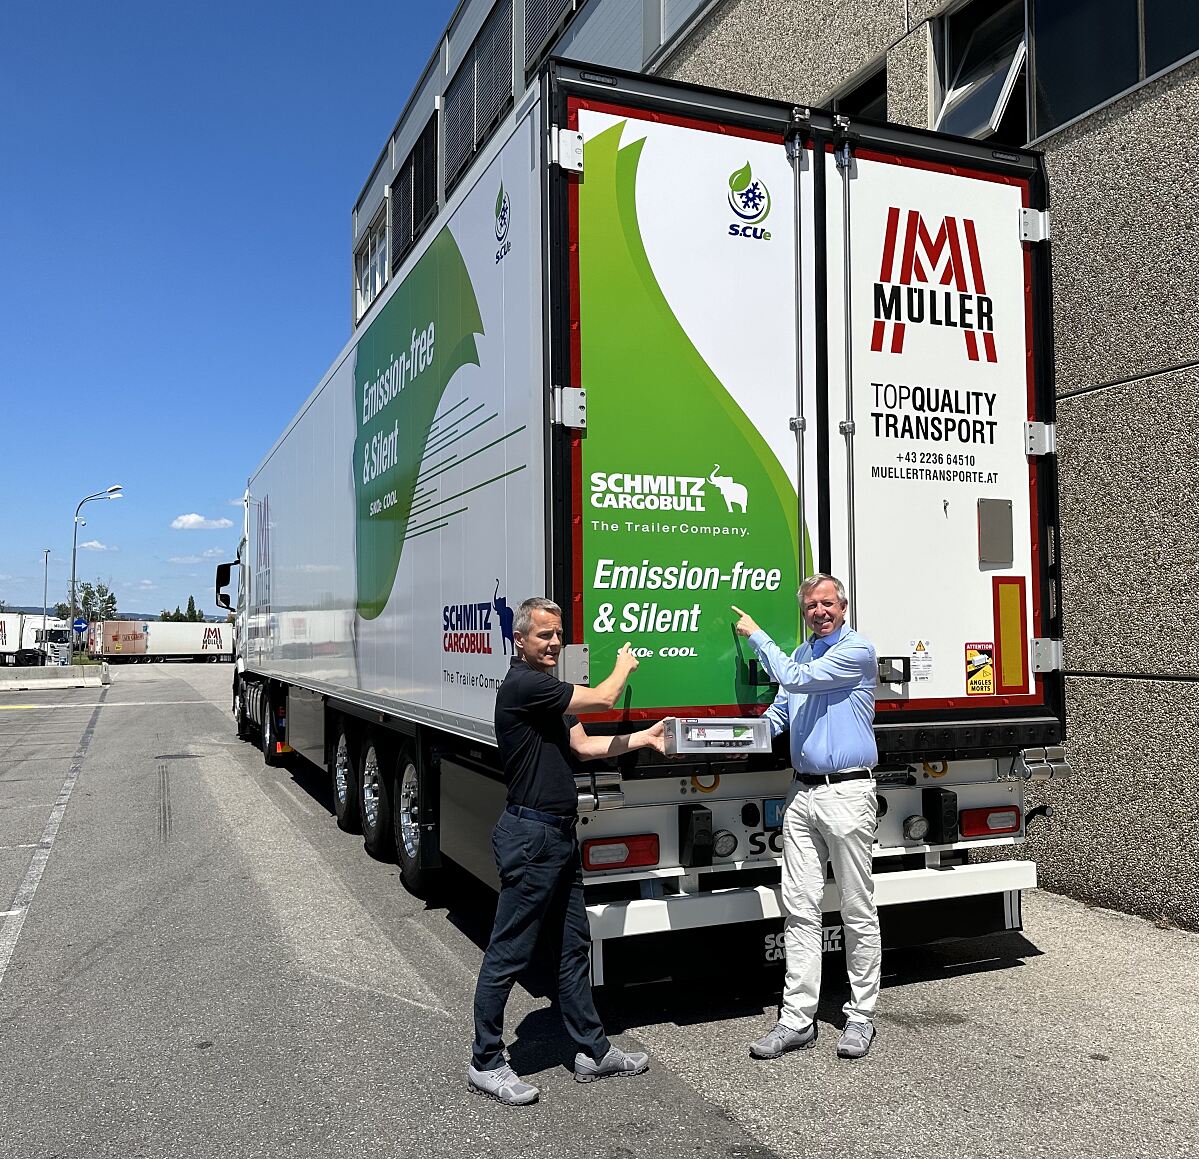 Premiere in Österreich: Müller Transporte testet voll-elektrische Kühlauflieger von Schmitz Cargobill